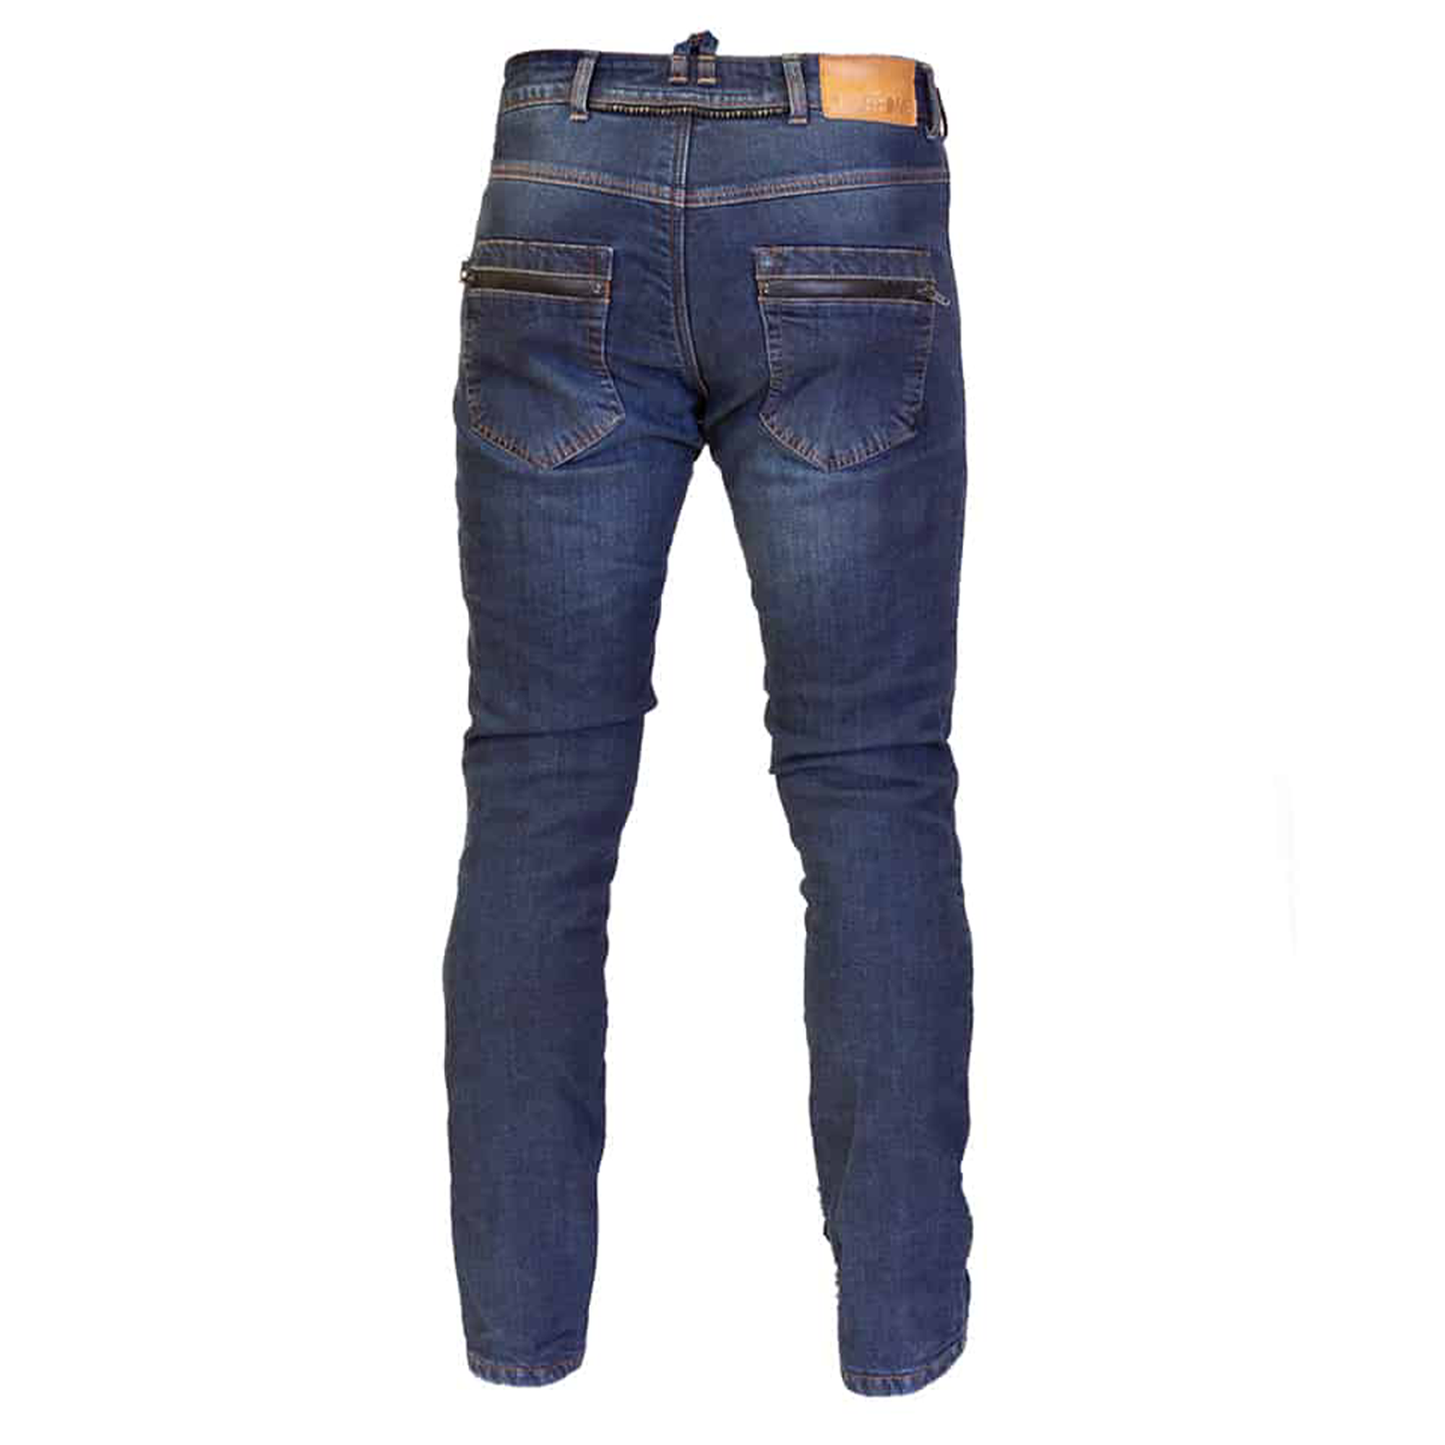 Merlin Mason Waterproof Short Jeans - Dark Blue